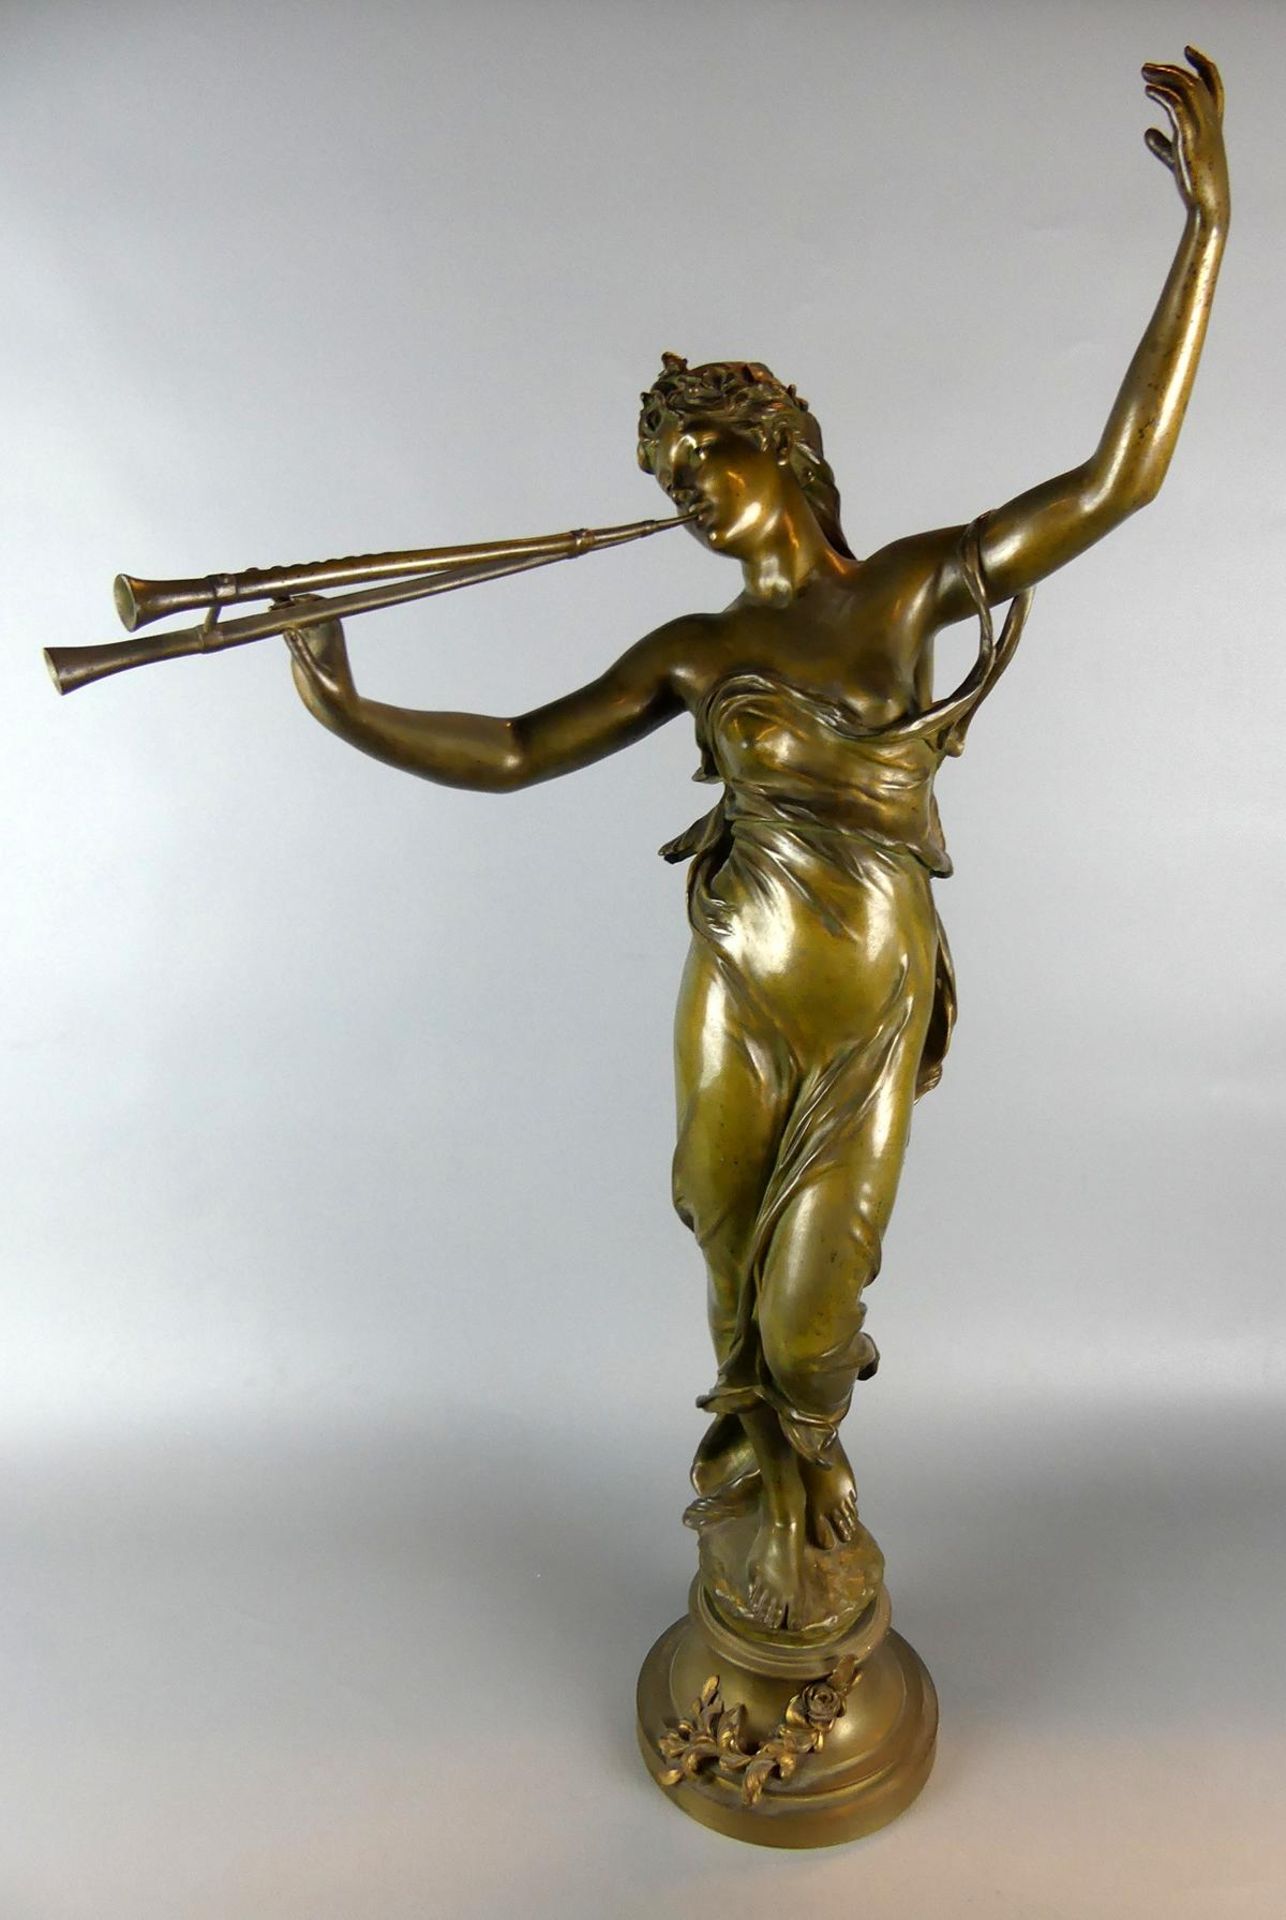 EUGÉNE MARIOTON (1854-1933), "Schalmeienspielerin", Bronze,